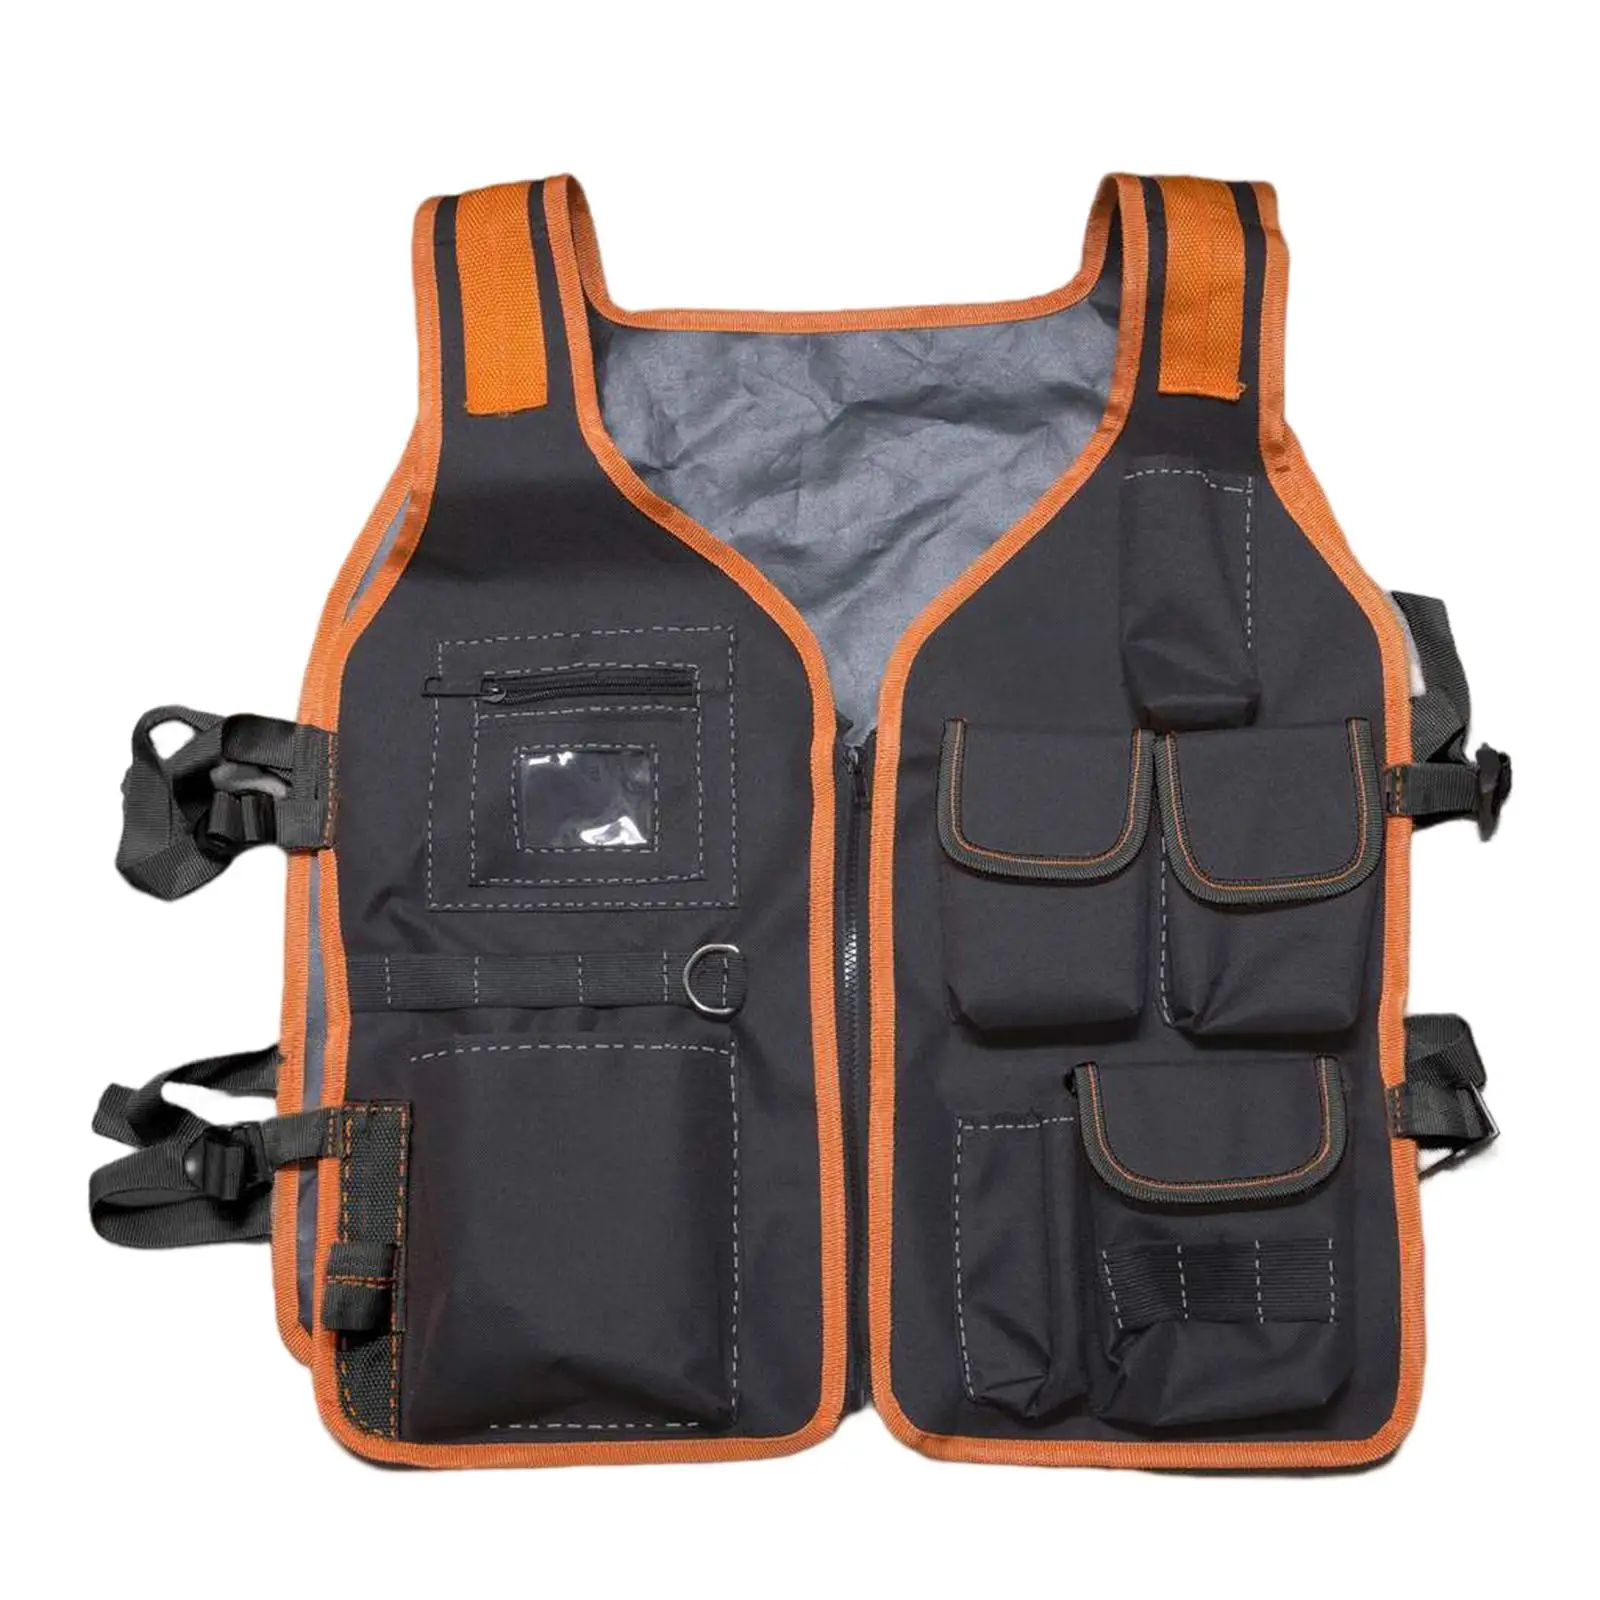 

Tool Pockets Vest For Work Cloth For Men With Oxford 60cmx51cm Carpenter Waist Electricians Bag Vest Universal Adjustable